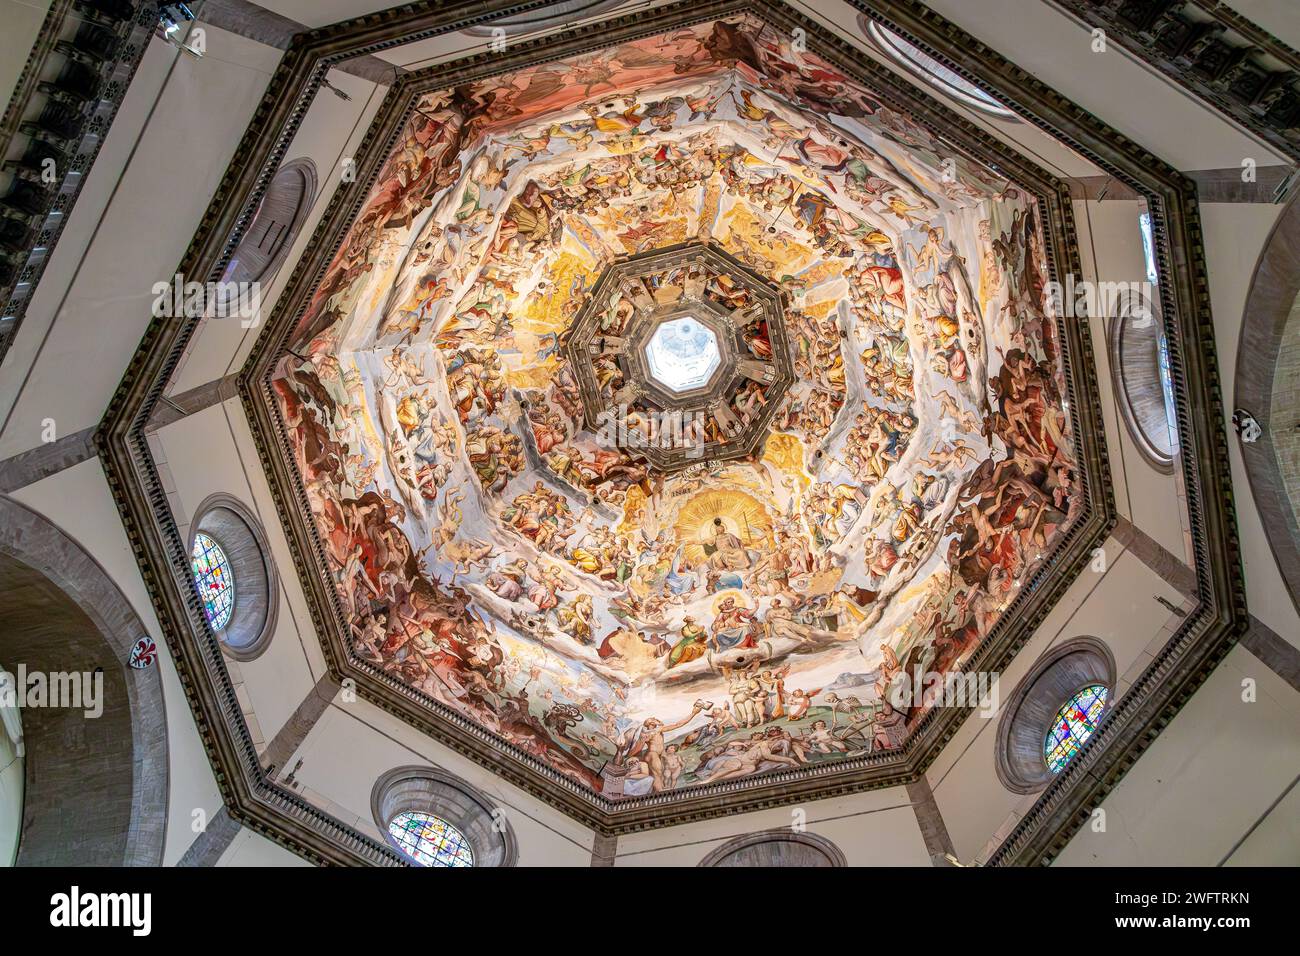 Gli affreschi del giudizio universale dipinti all'interno del Duomo all'interno del Duomo di Firenze, il Duomo, Firenze, Italia Foto Stock